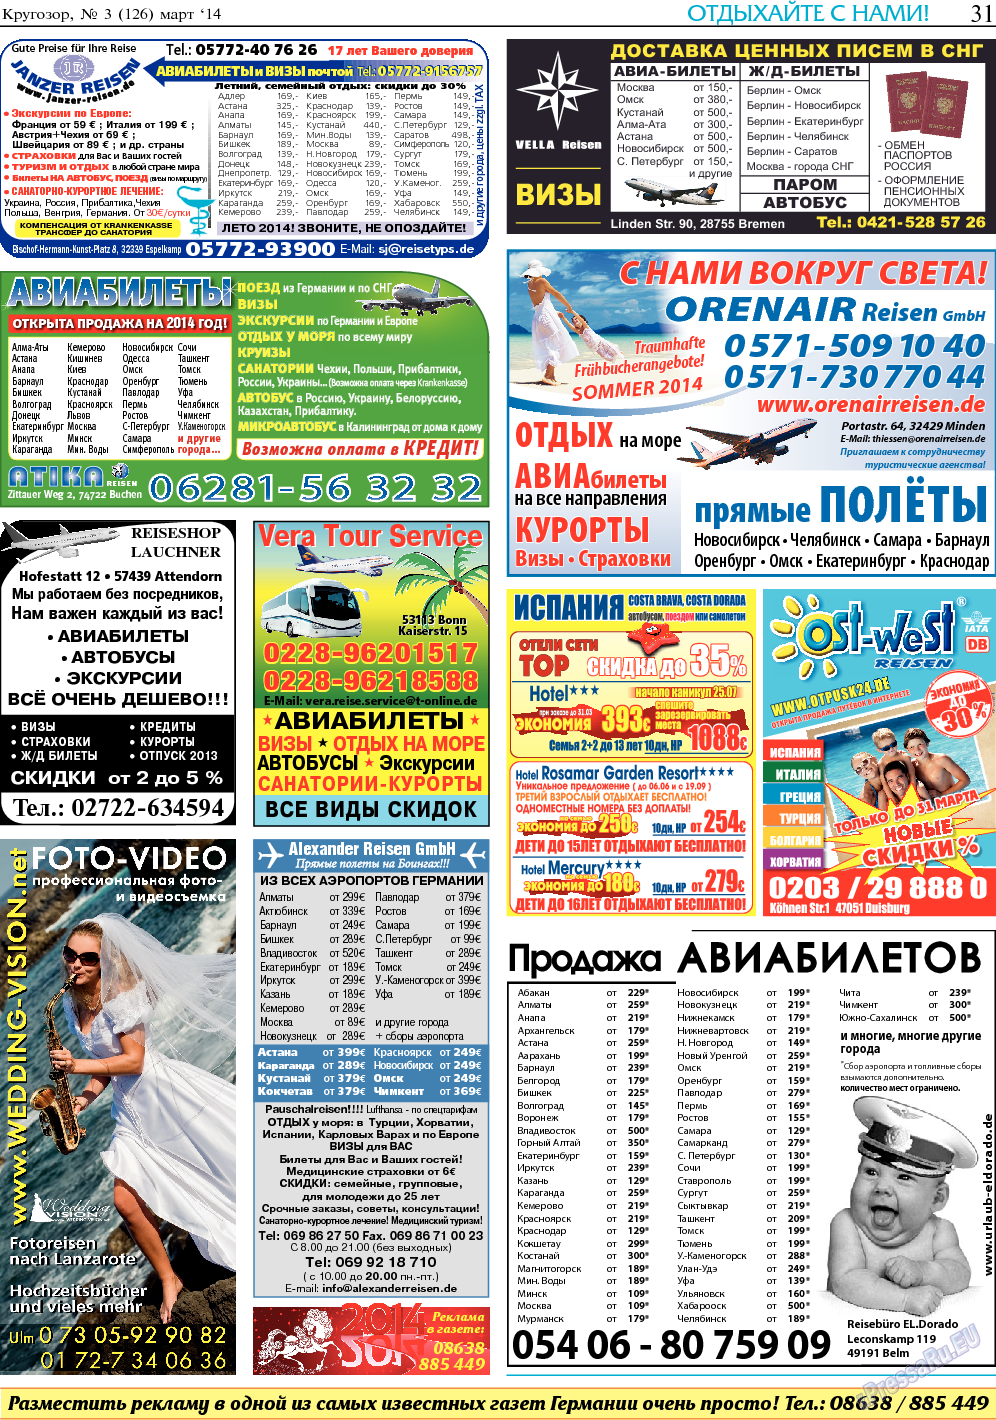 Кругозор, газета. 2014 №3 стр.31